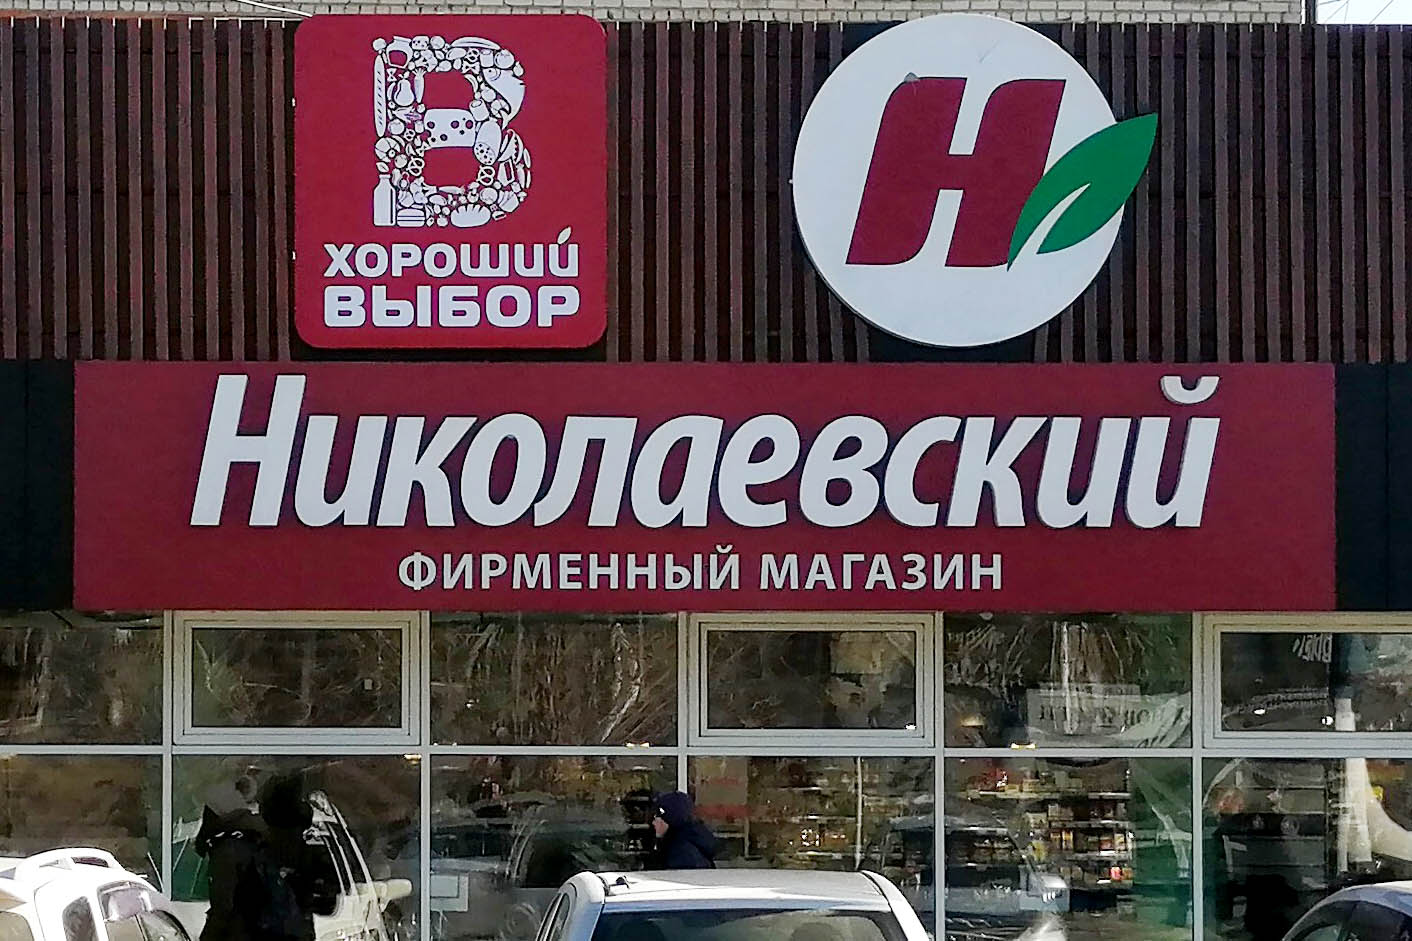 Хороший выбор магазин Николаевский.jpg